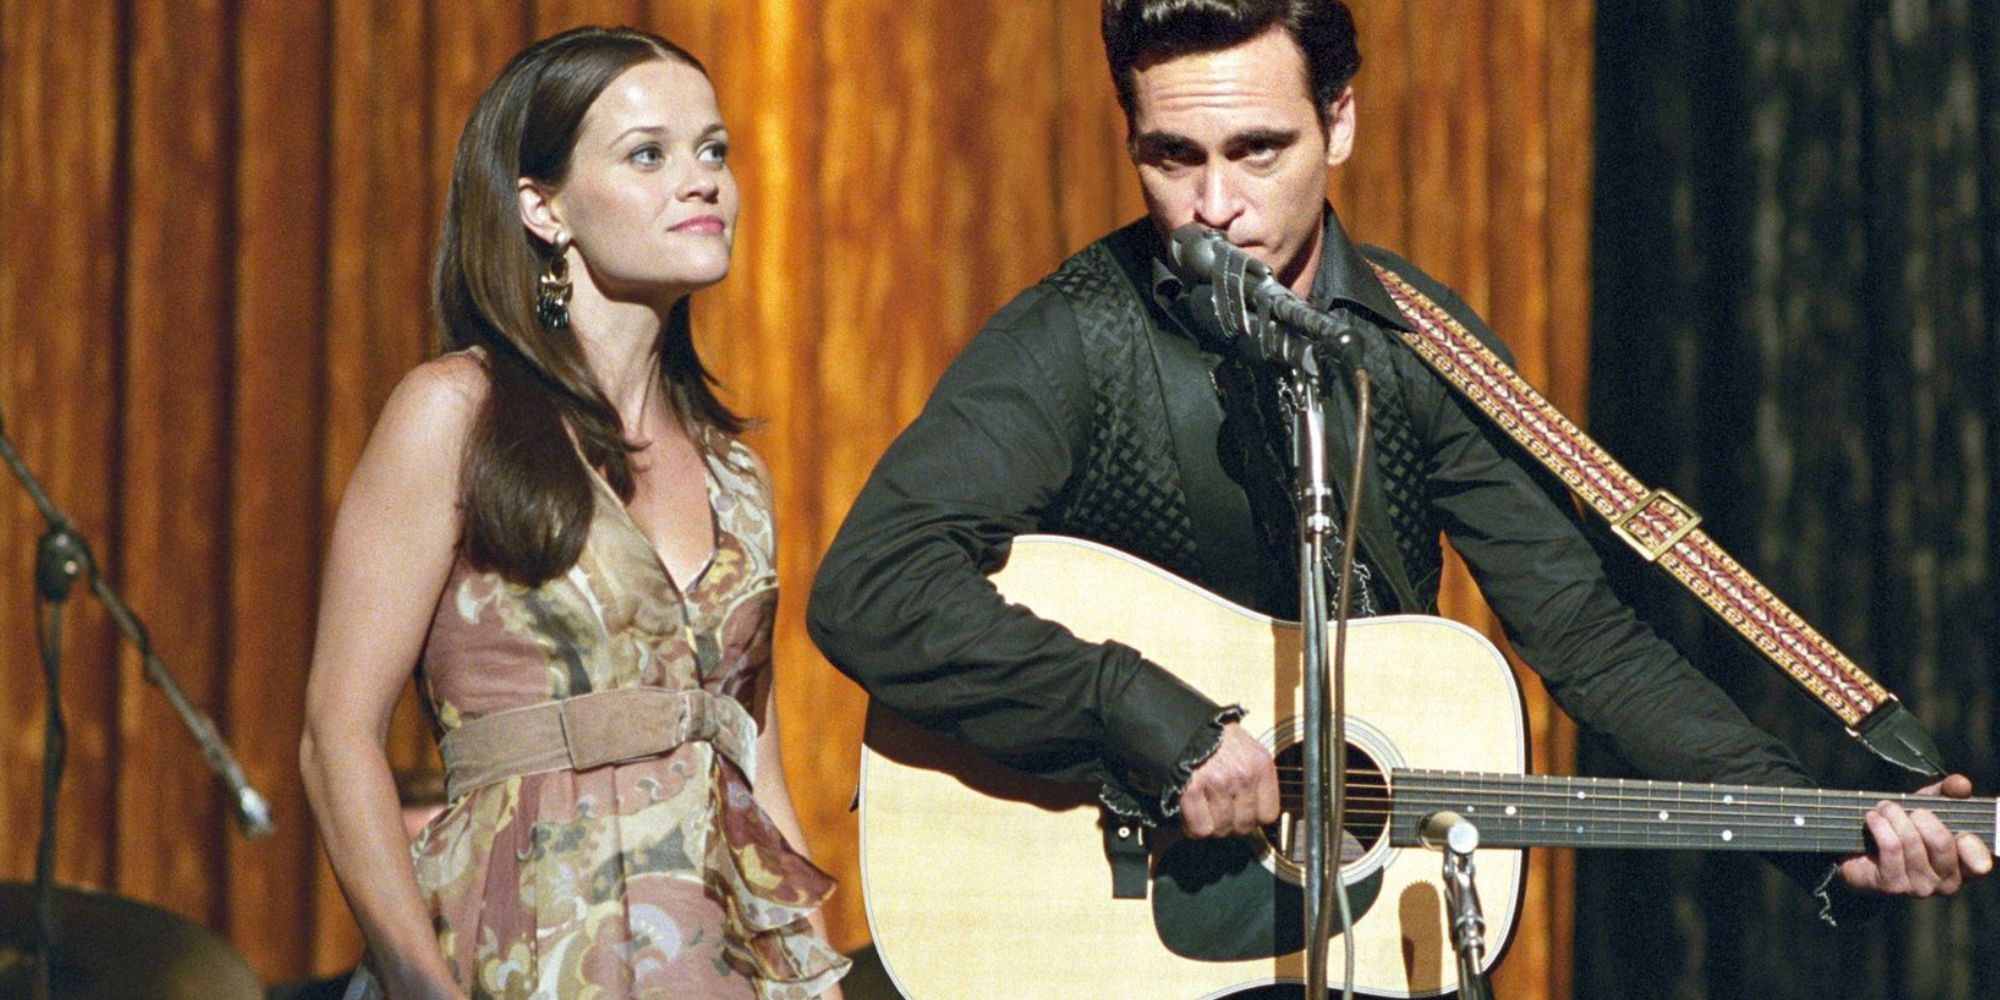 Reese Witherspoon à côté de Joaquin Phoenix sur scène chantant ensemble dans Walk the Line.